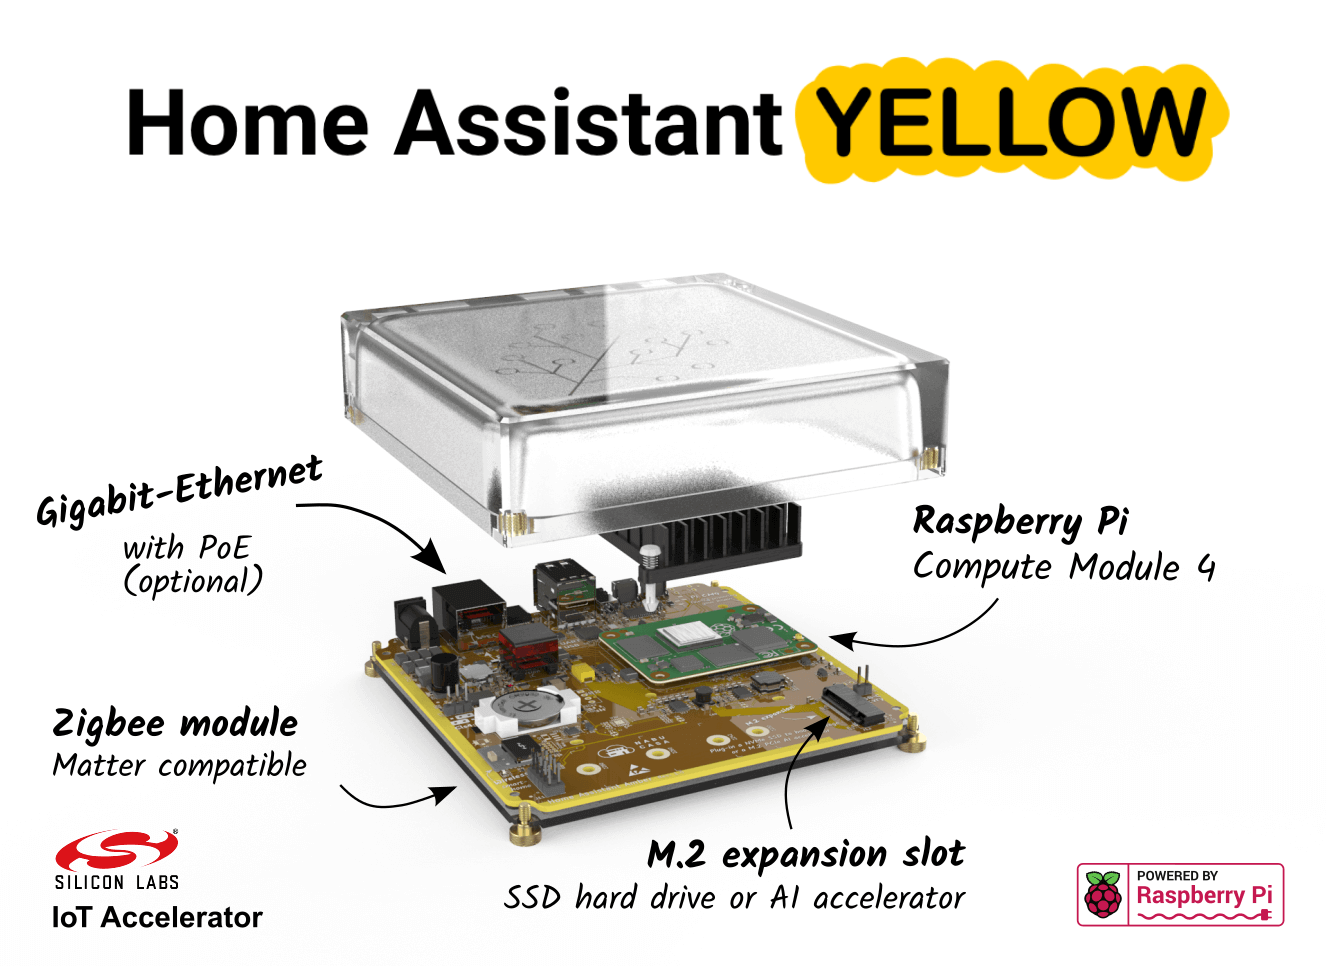 Descripción general de las funciones de Home Assistant Yellow.